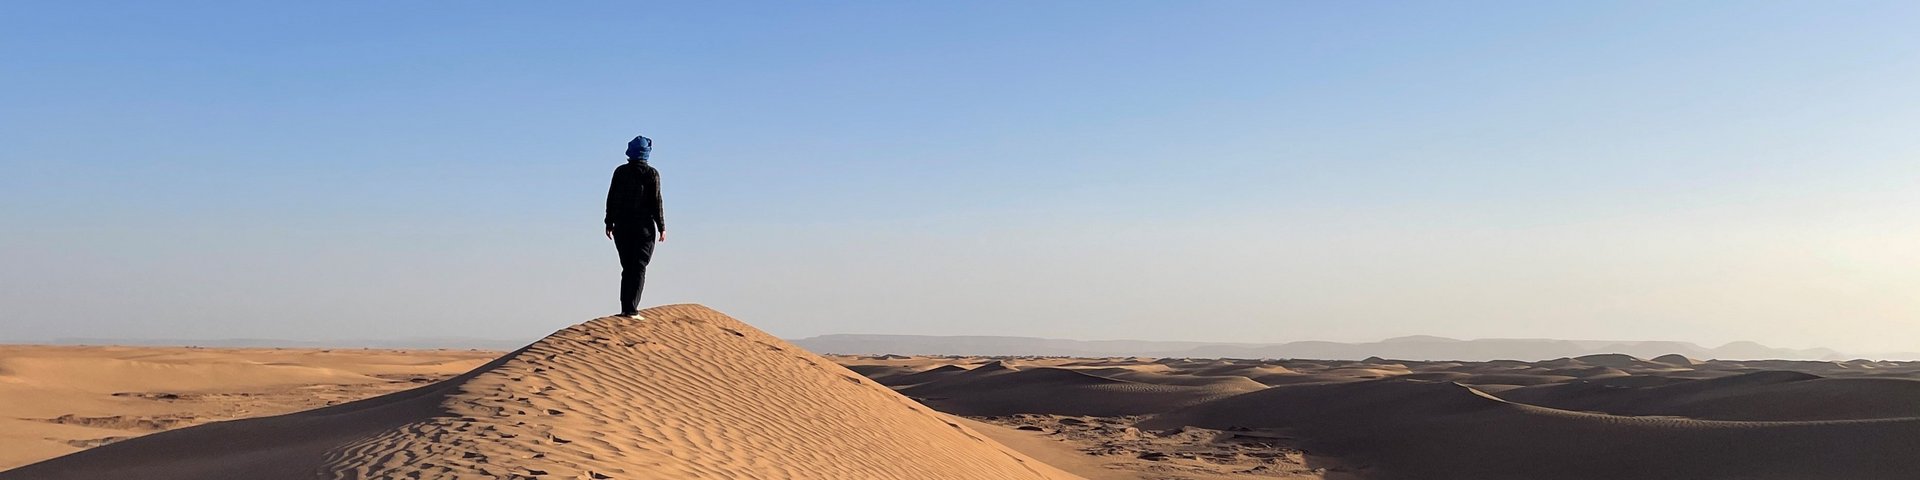 Abendspaziergang auf den Dünen in der Wüste Marrokos. 